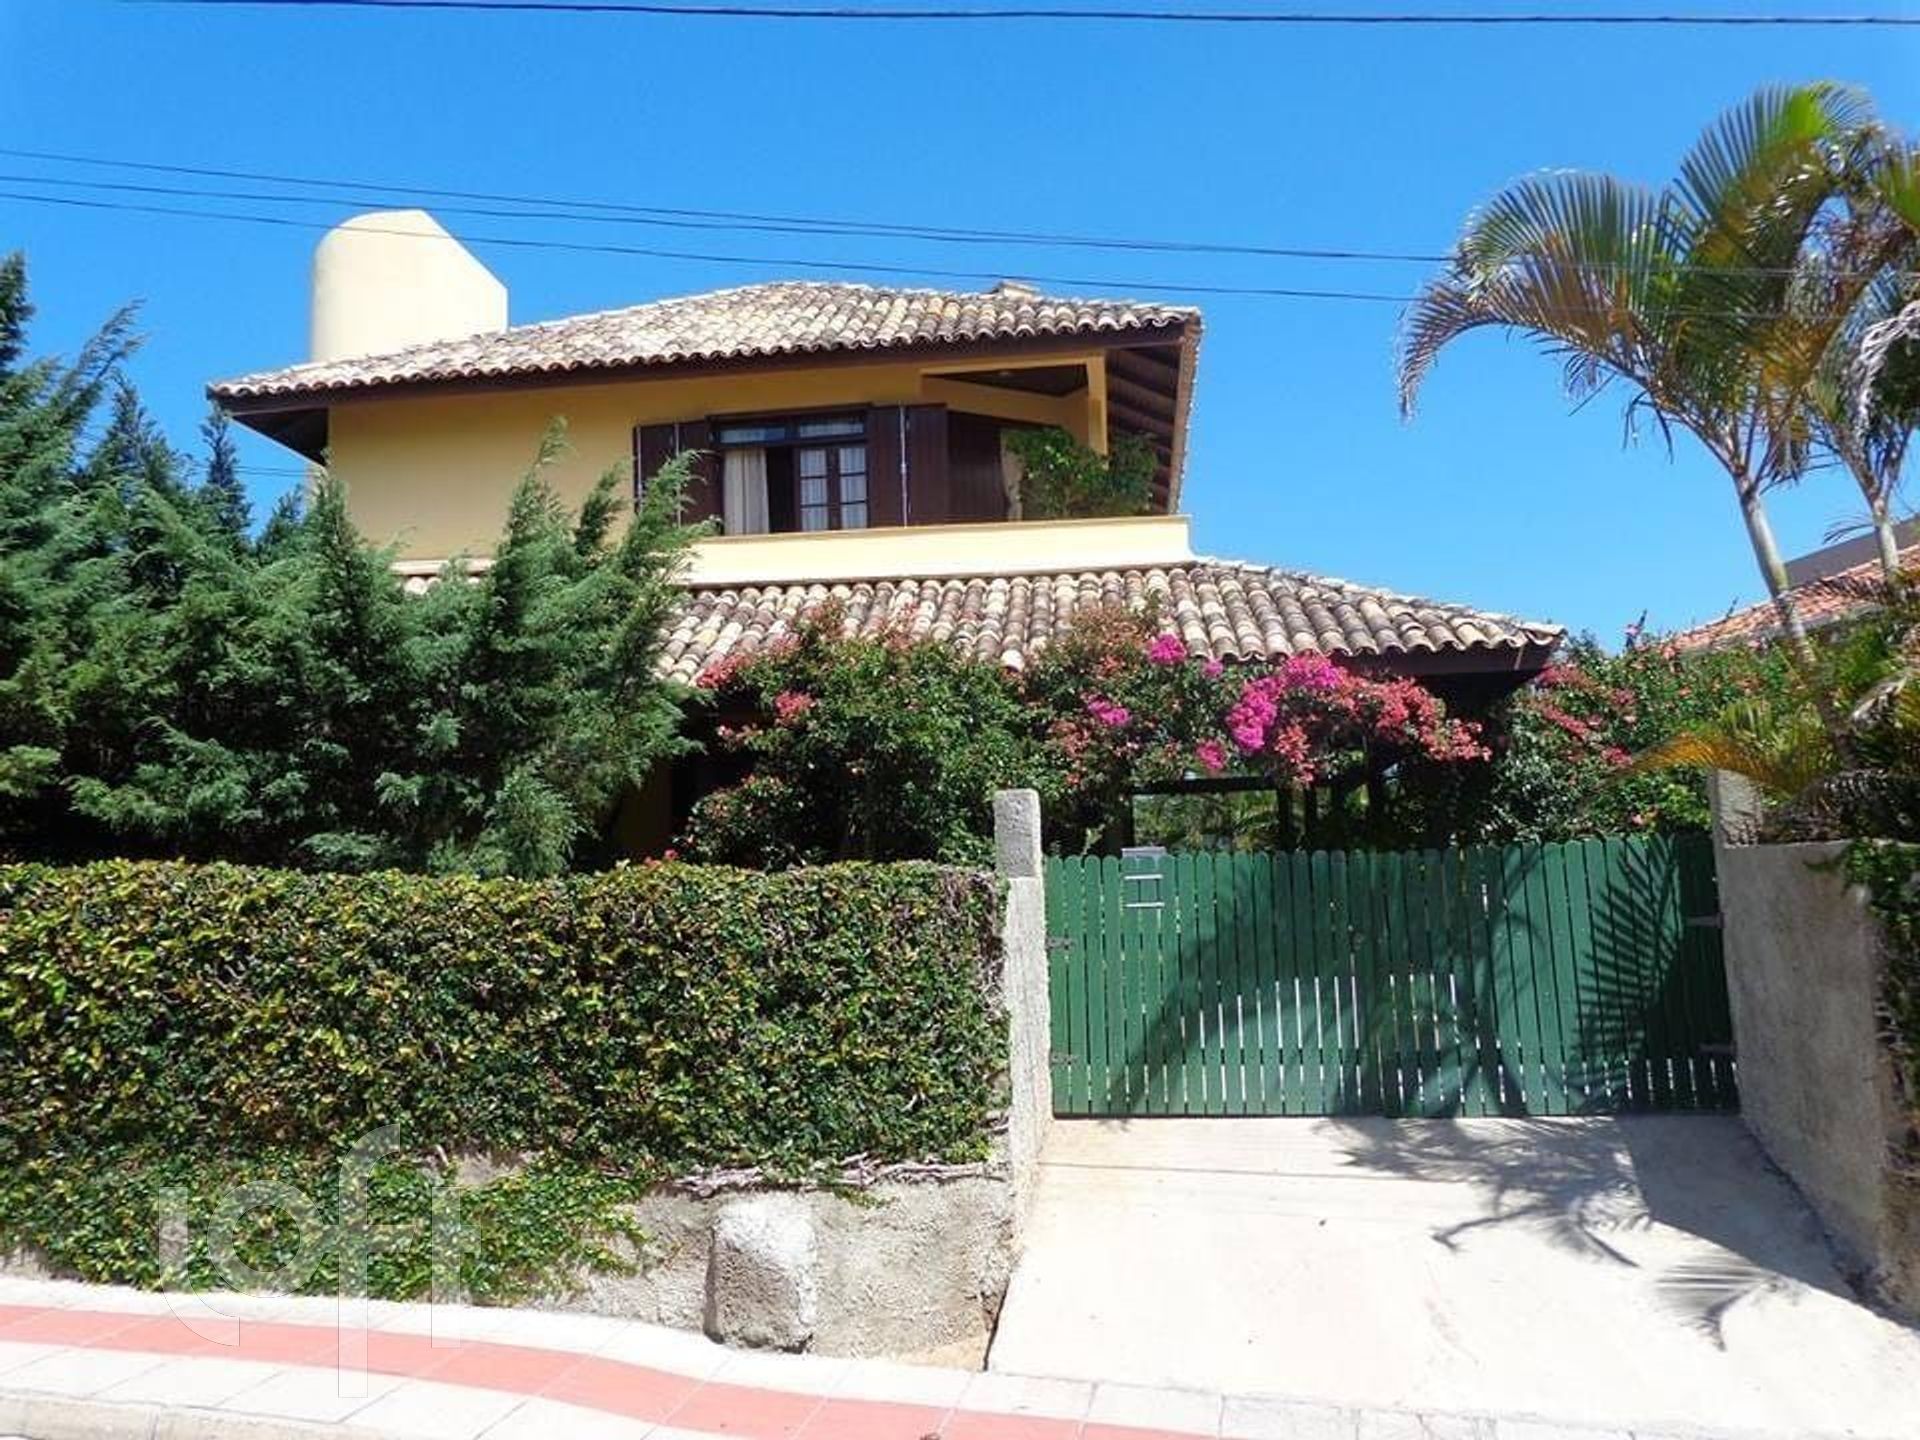 VENDA &#8211; Casa de 3 quartos no bairro Ingleses, Florianópolis &#8211; PU10nwwbe